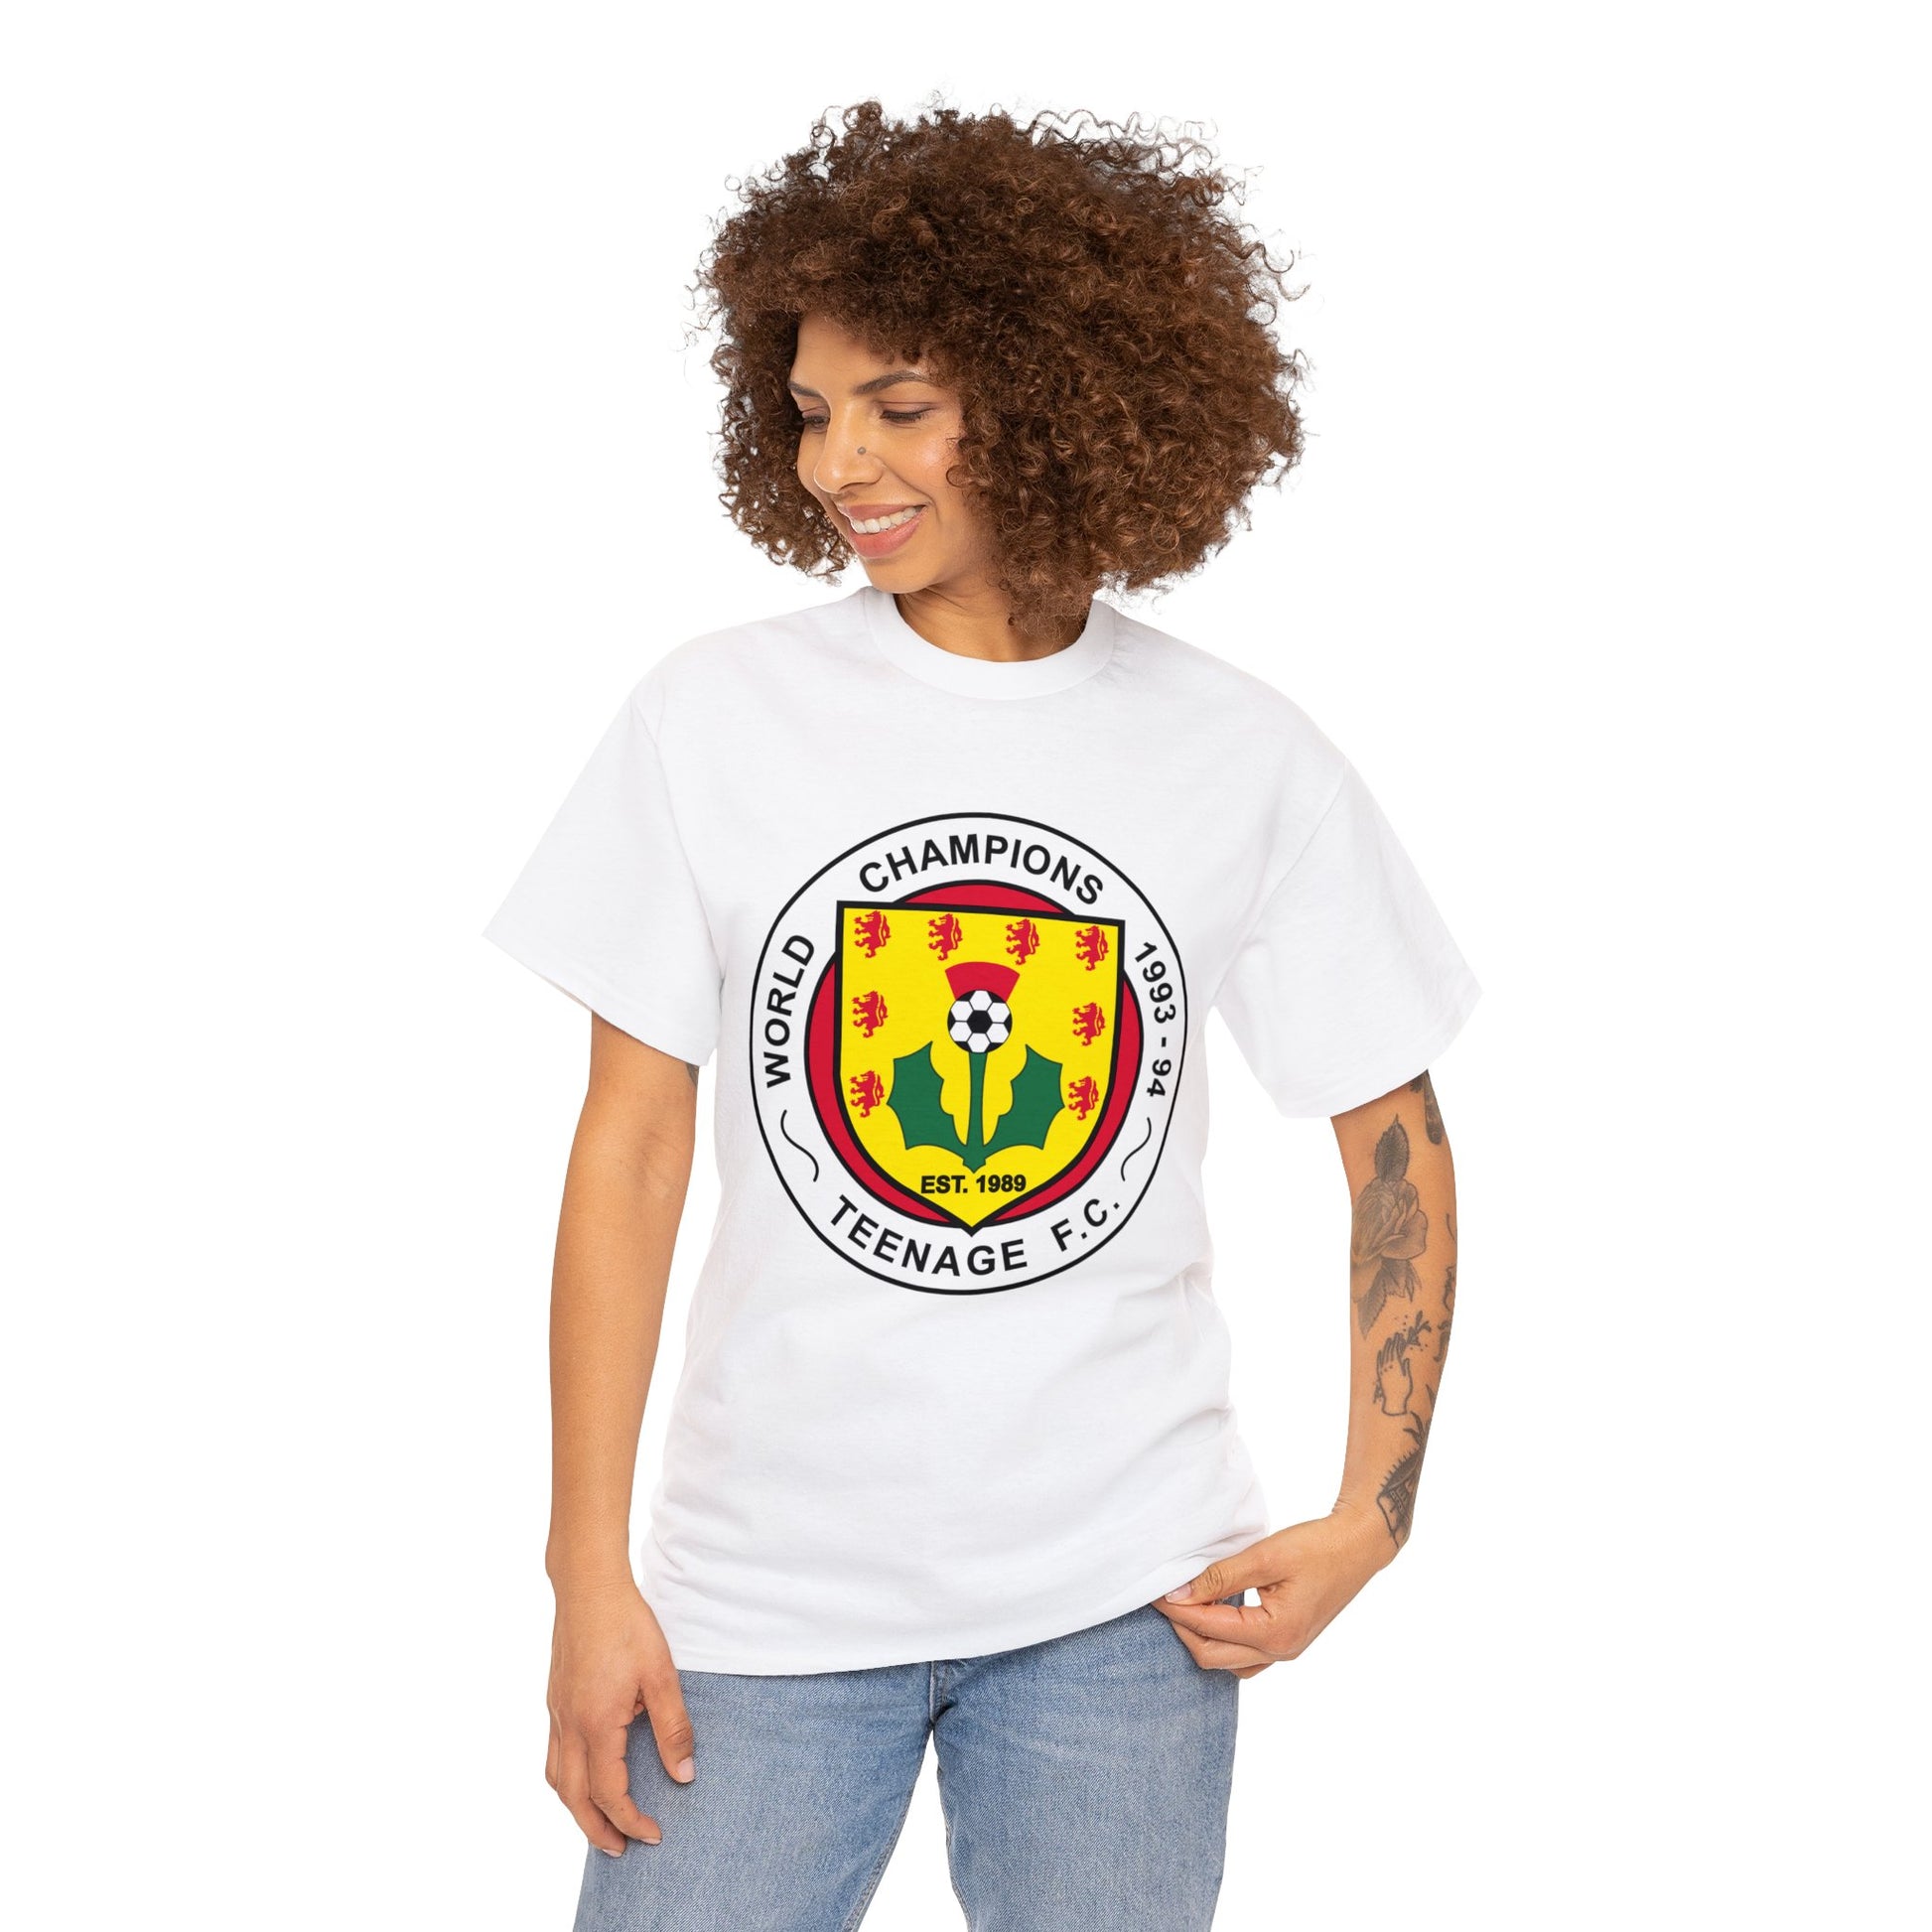 Teenage Fanclub Football Club 1993 T-shirt for Sale